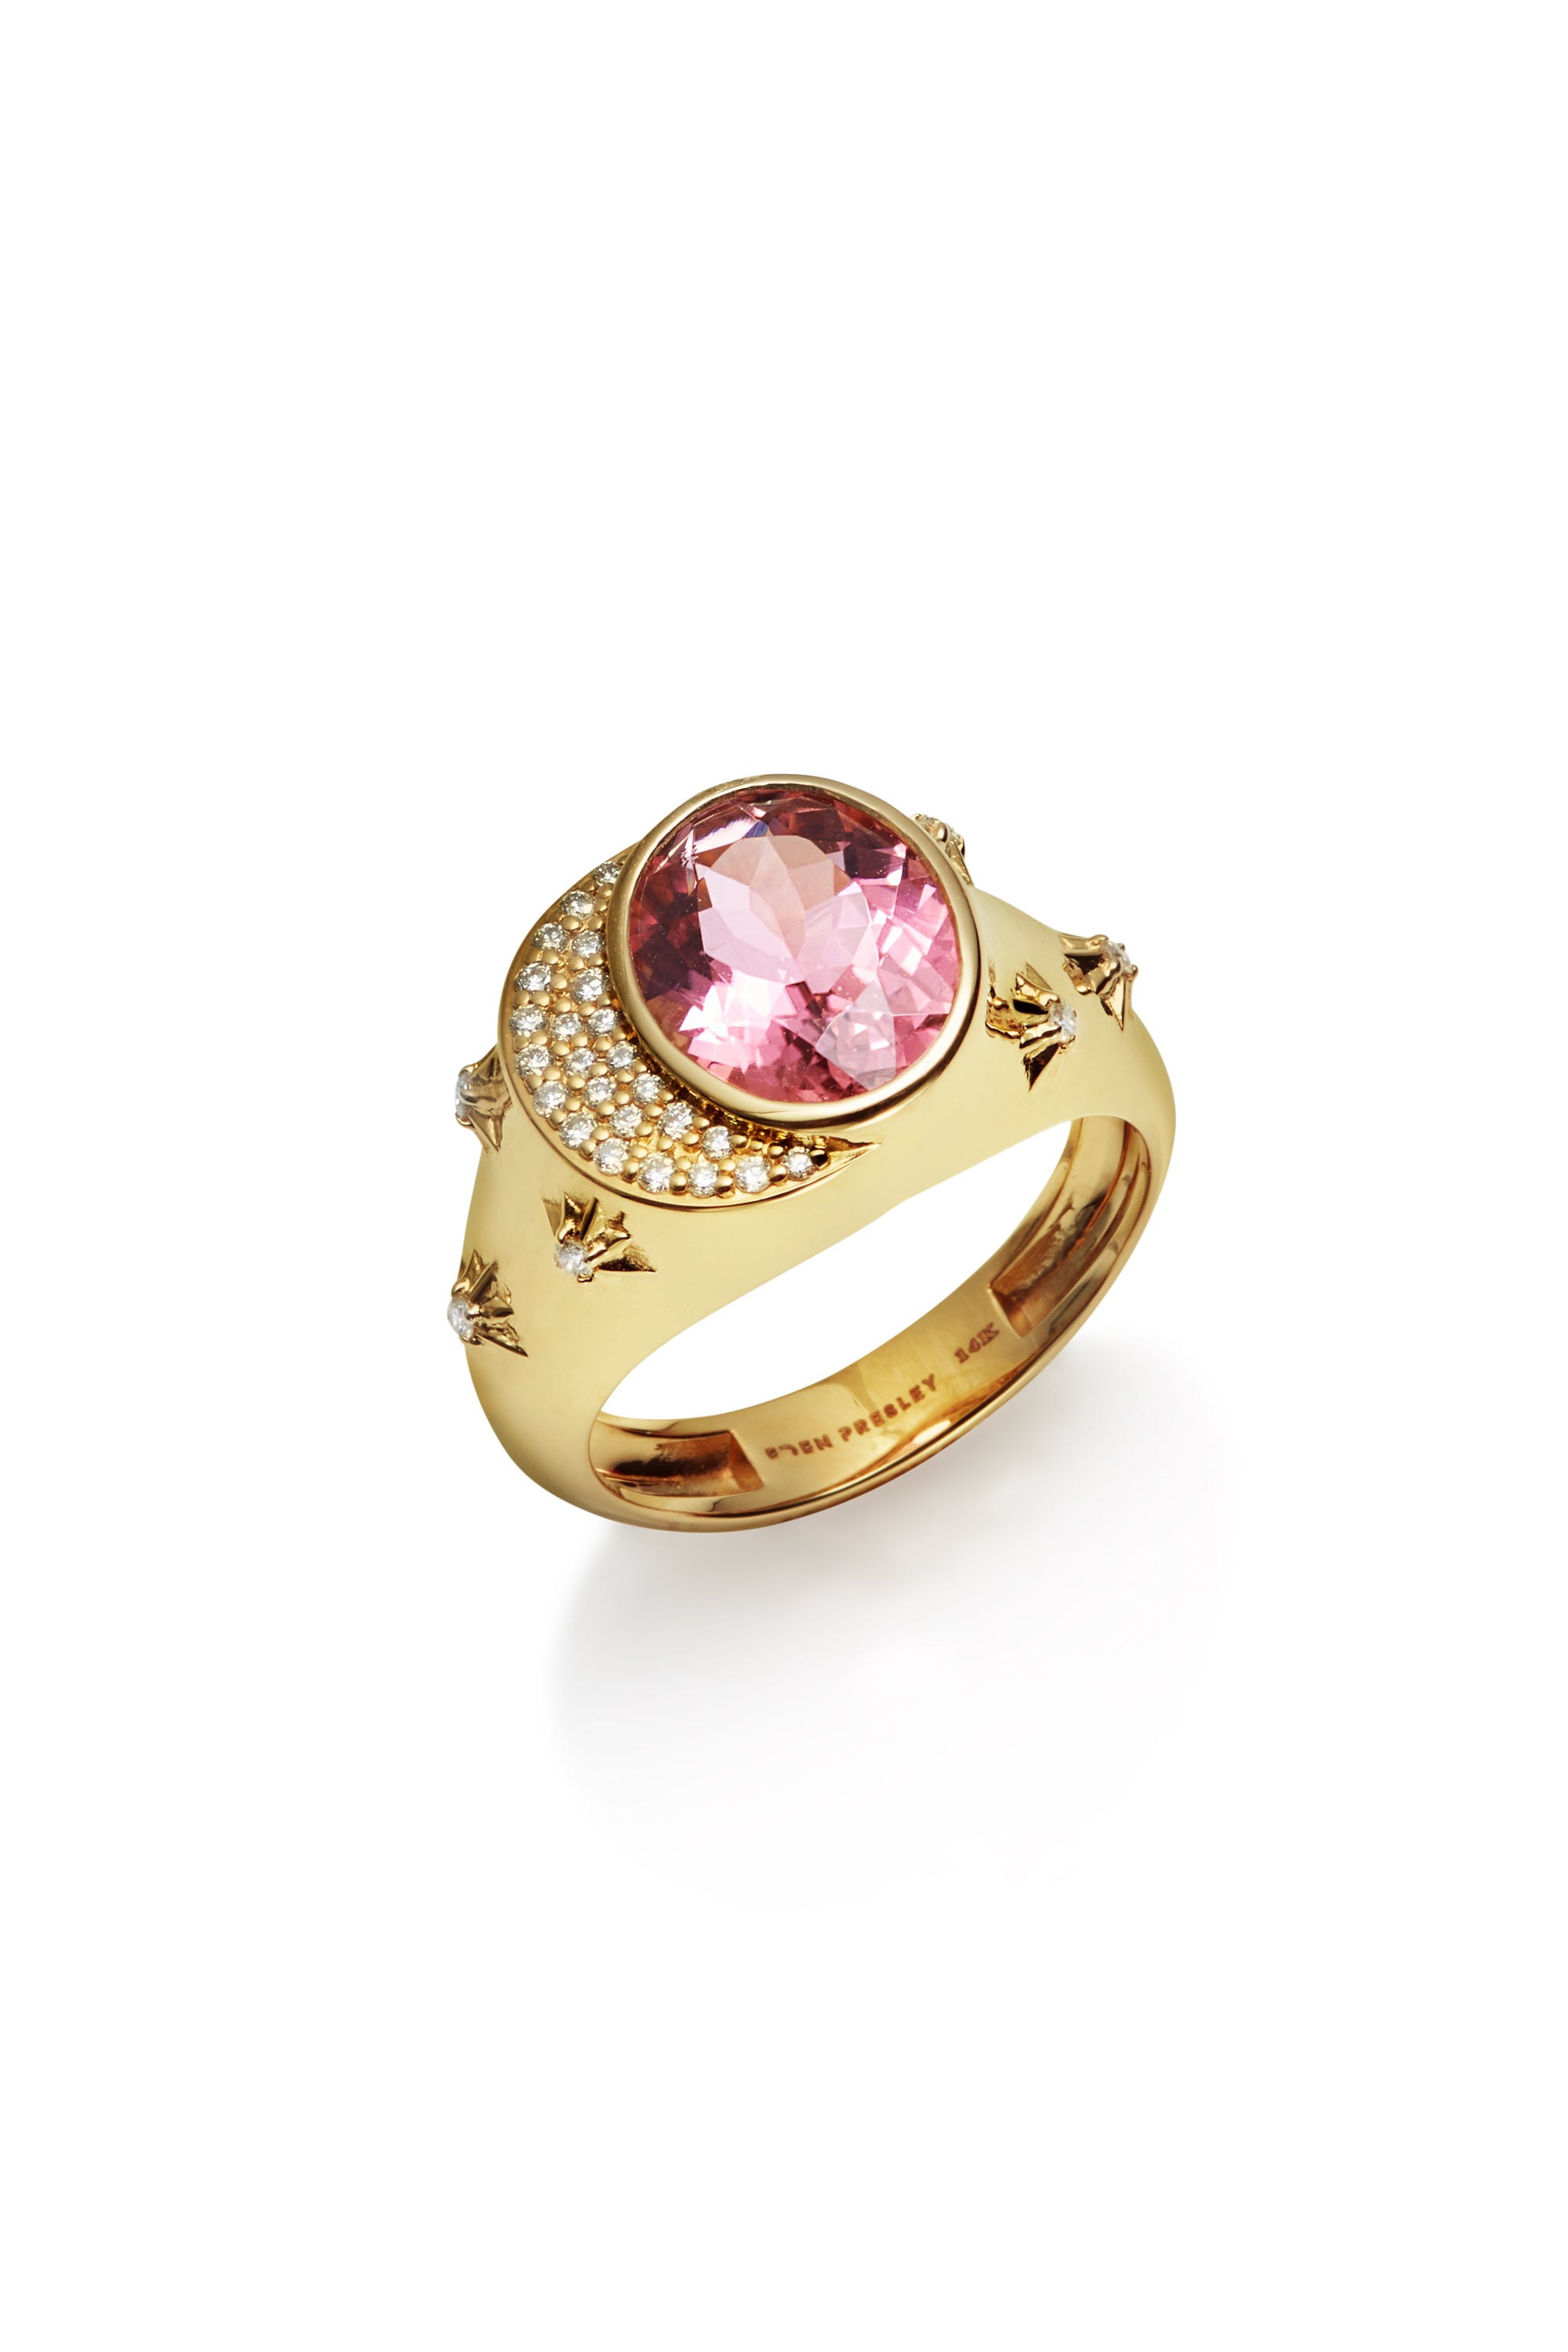 14KY Celeste Pink Tourmaline Ring